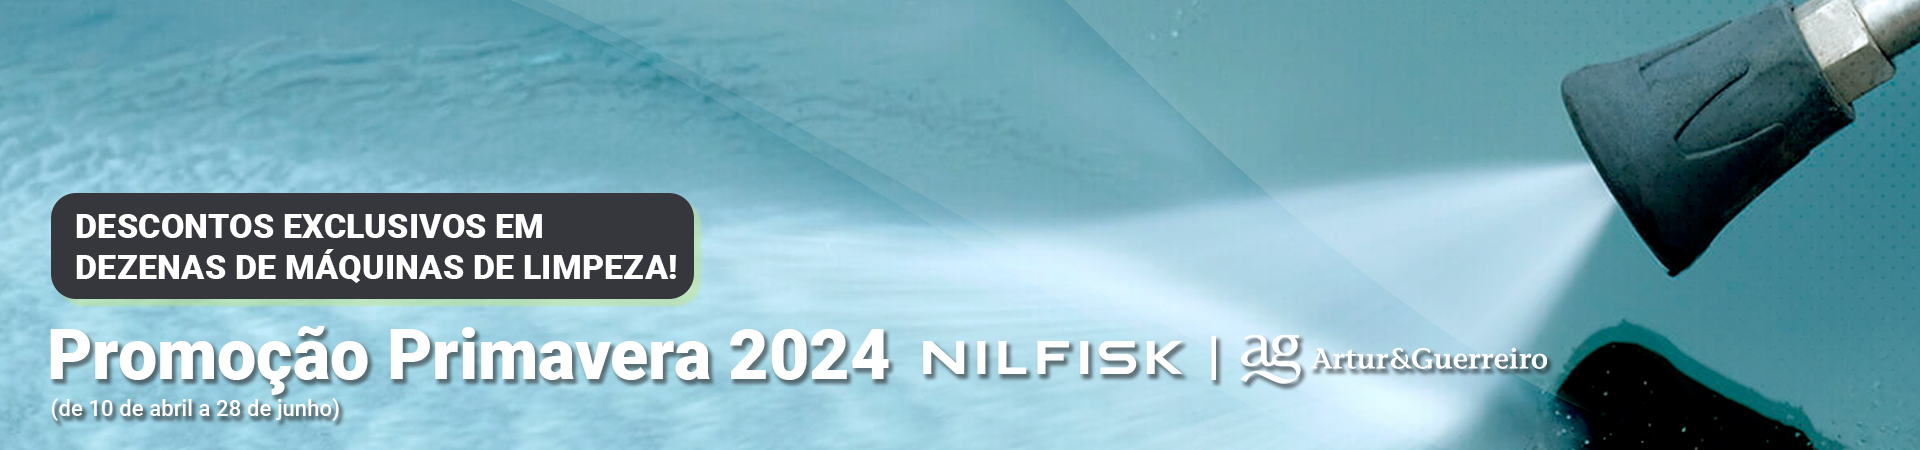 Promoo Primavera Nilfisk 2024